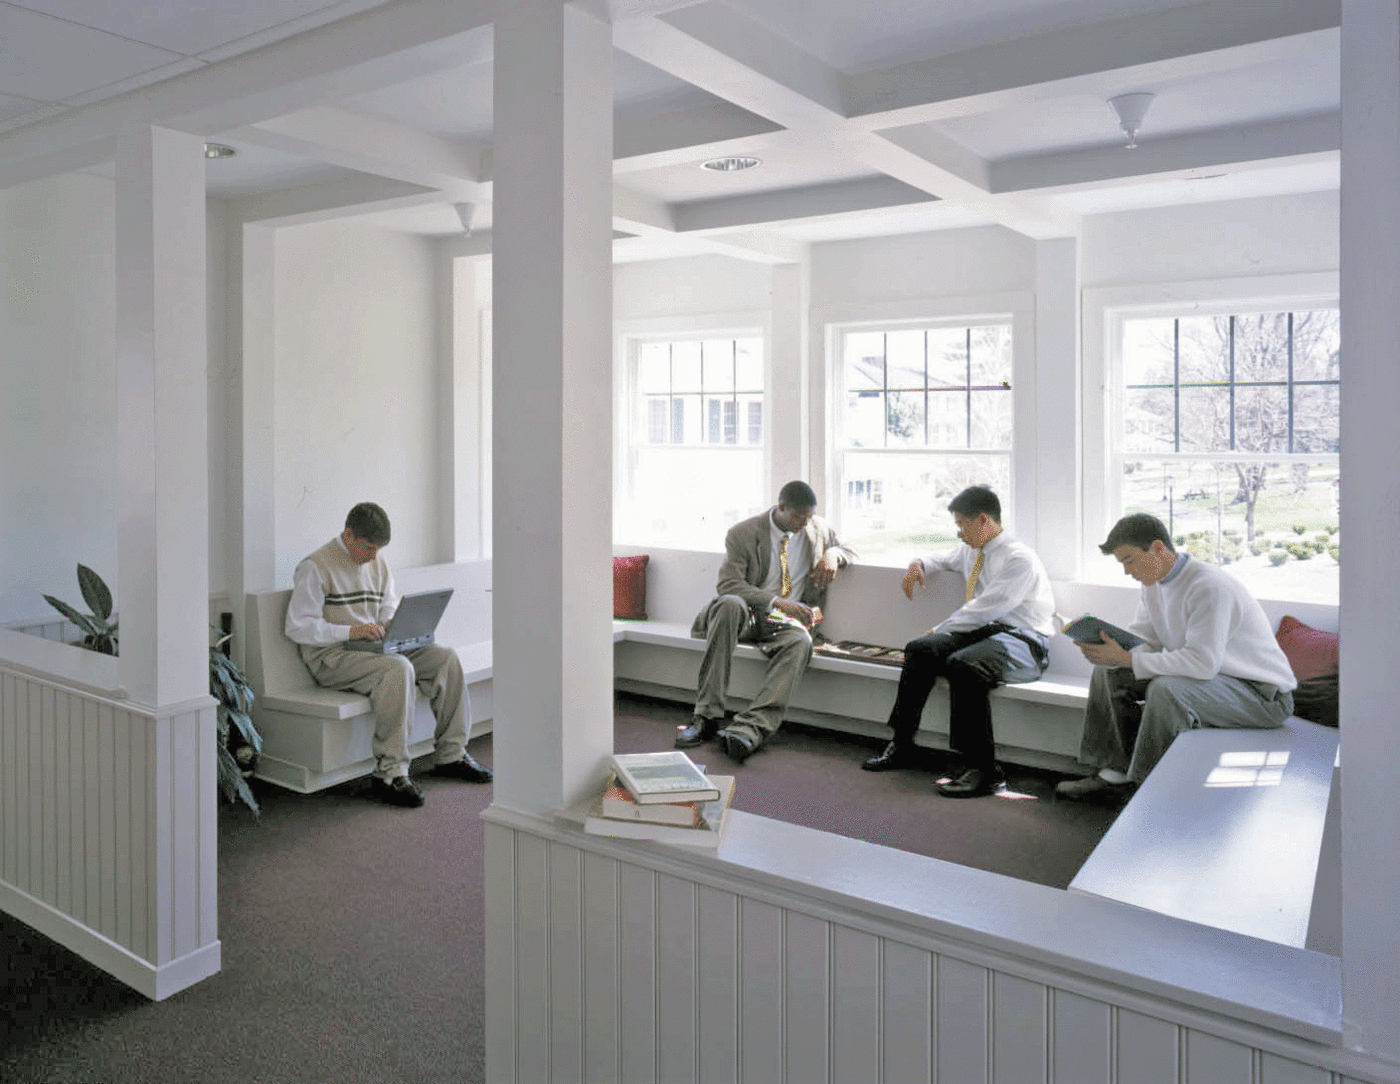 Rectoryschool dorm interior 1 1400 xxx q85